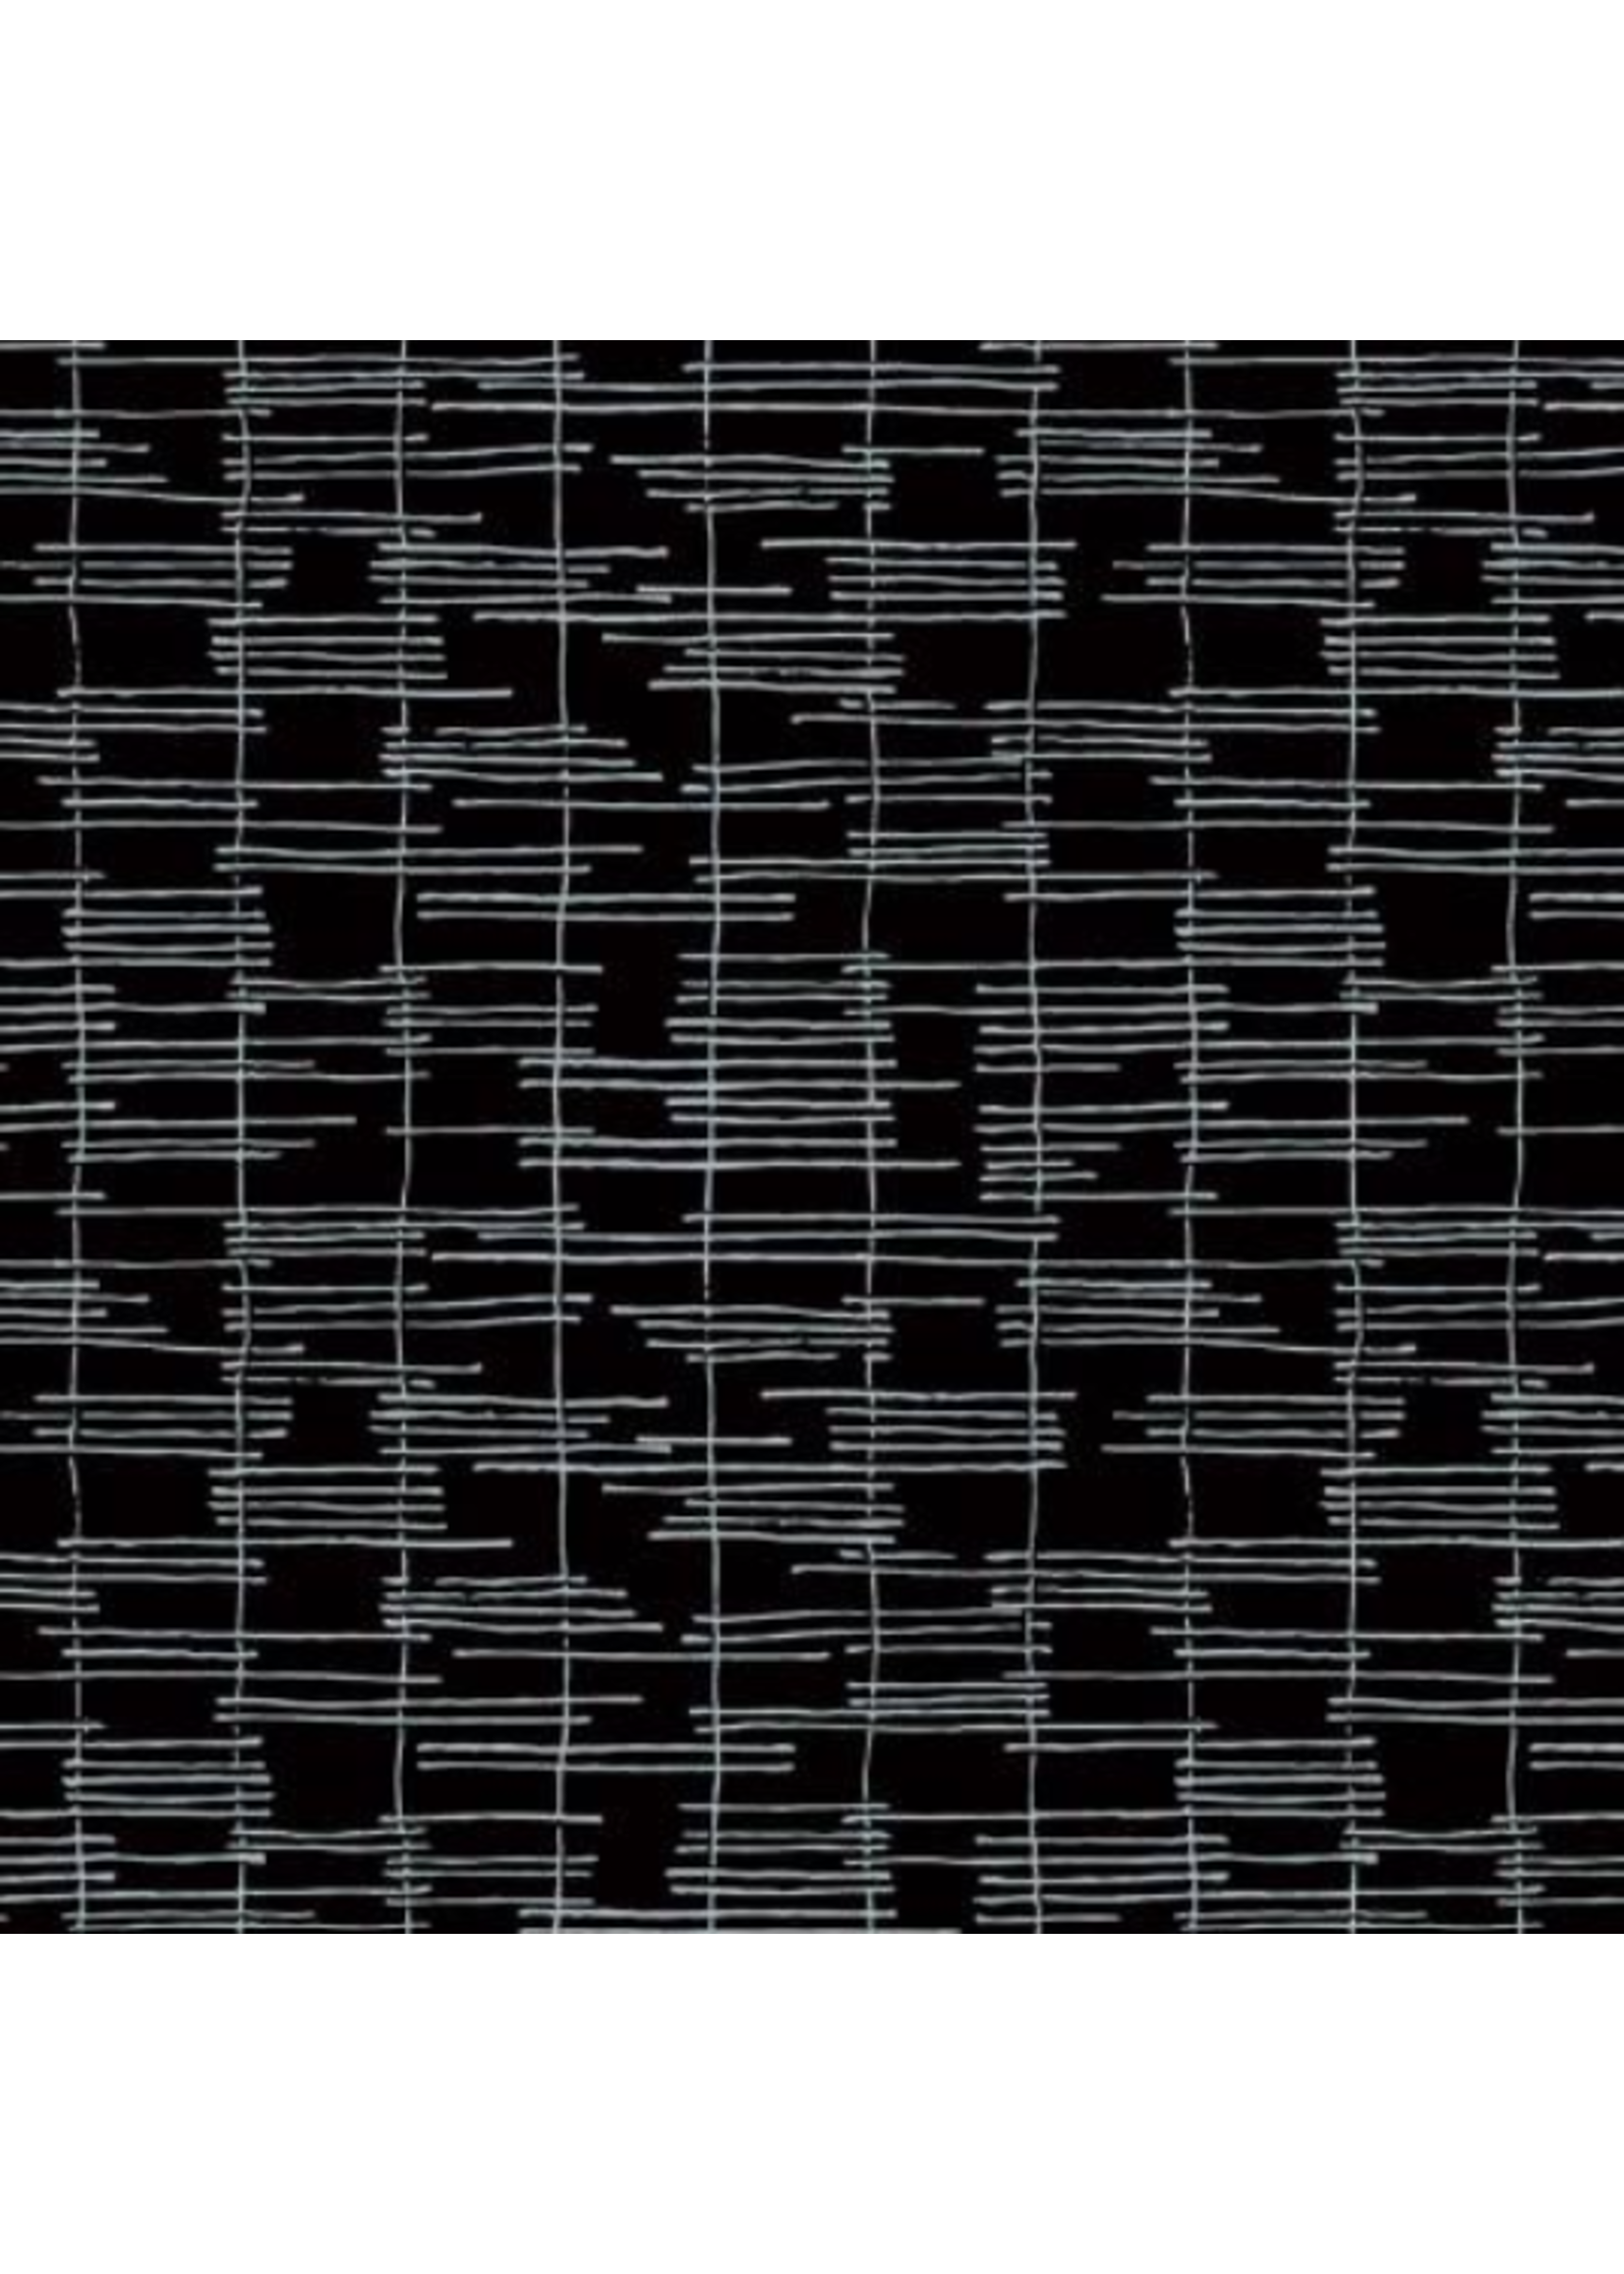 Windham Fabrics Maker's Collage - Black Trellis- Per 1/2 Meter